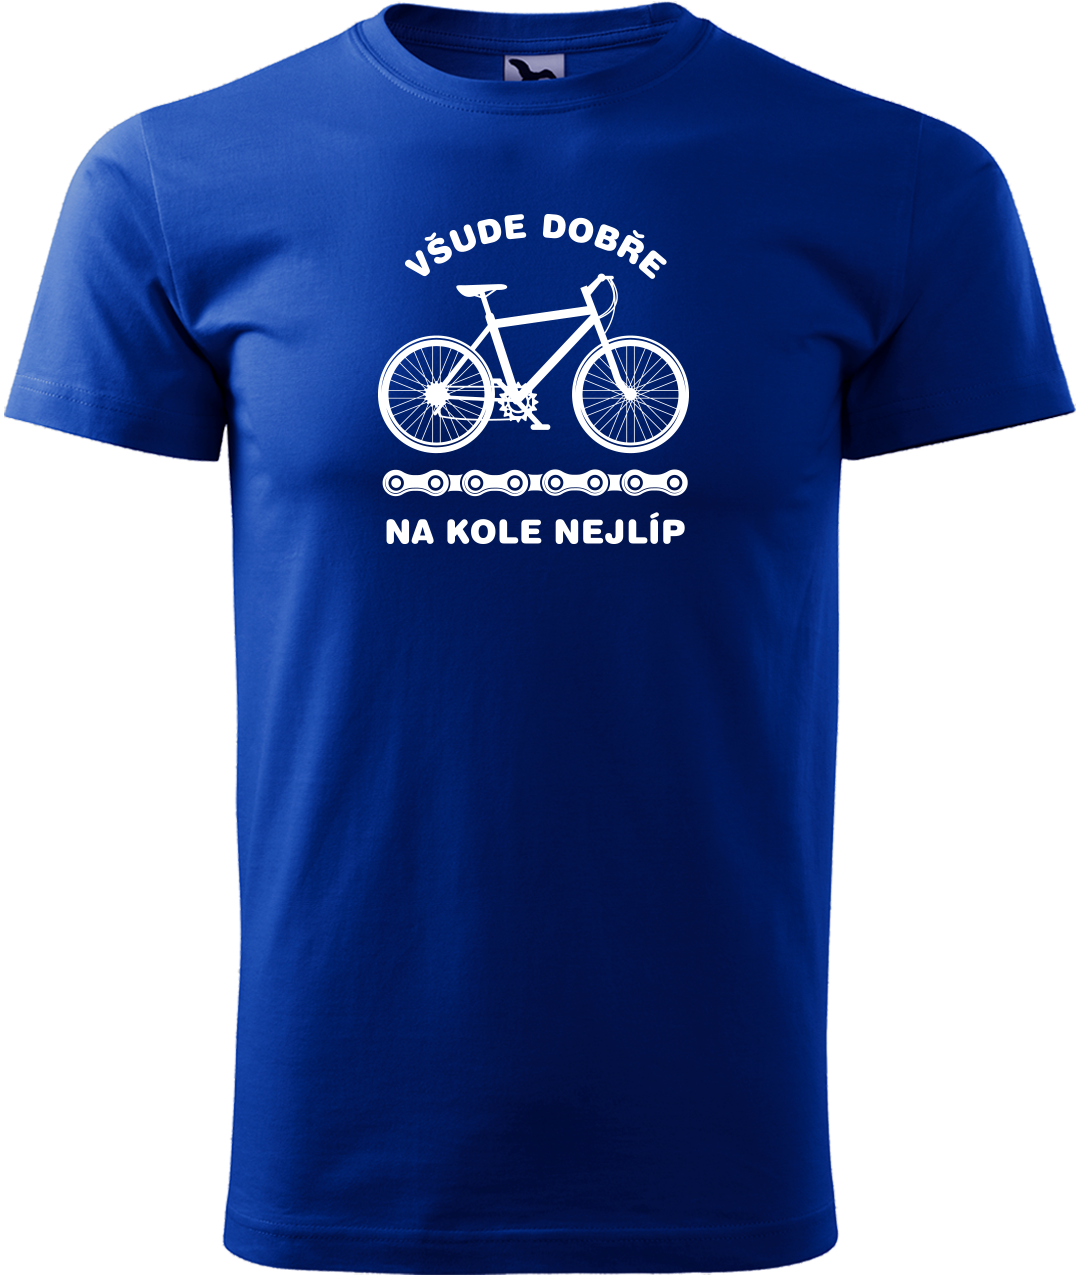 Pánské tričko s kolem - Všude dobře, na kole nejlíp Velikost: XL, Barva: Královská modrá (05)